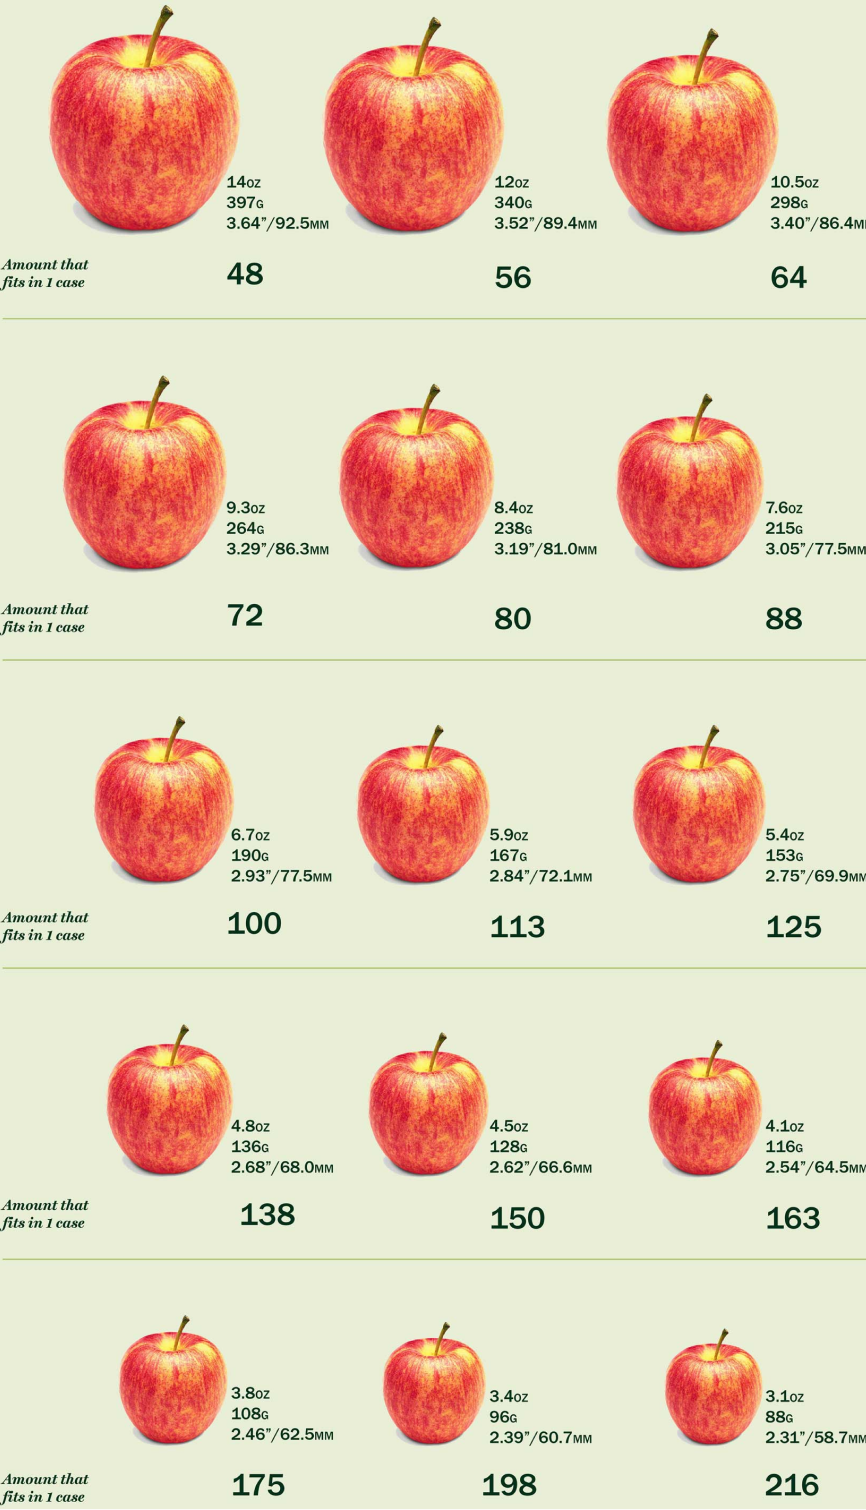 رسم بياني يوضح الأحجام القياسية الخمسة عشر للتفاح من 15 إلى 216.